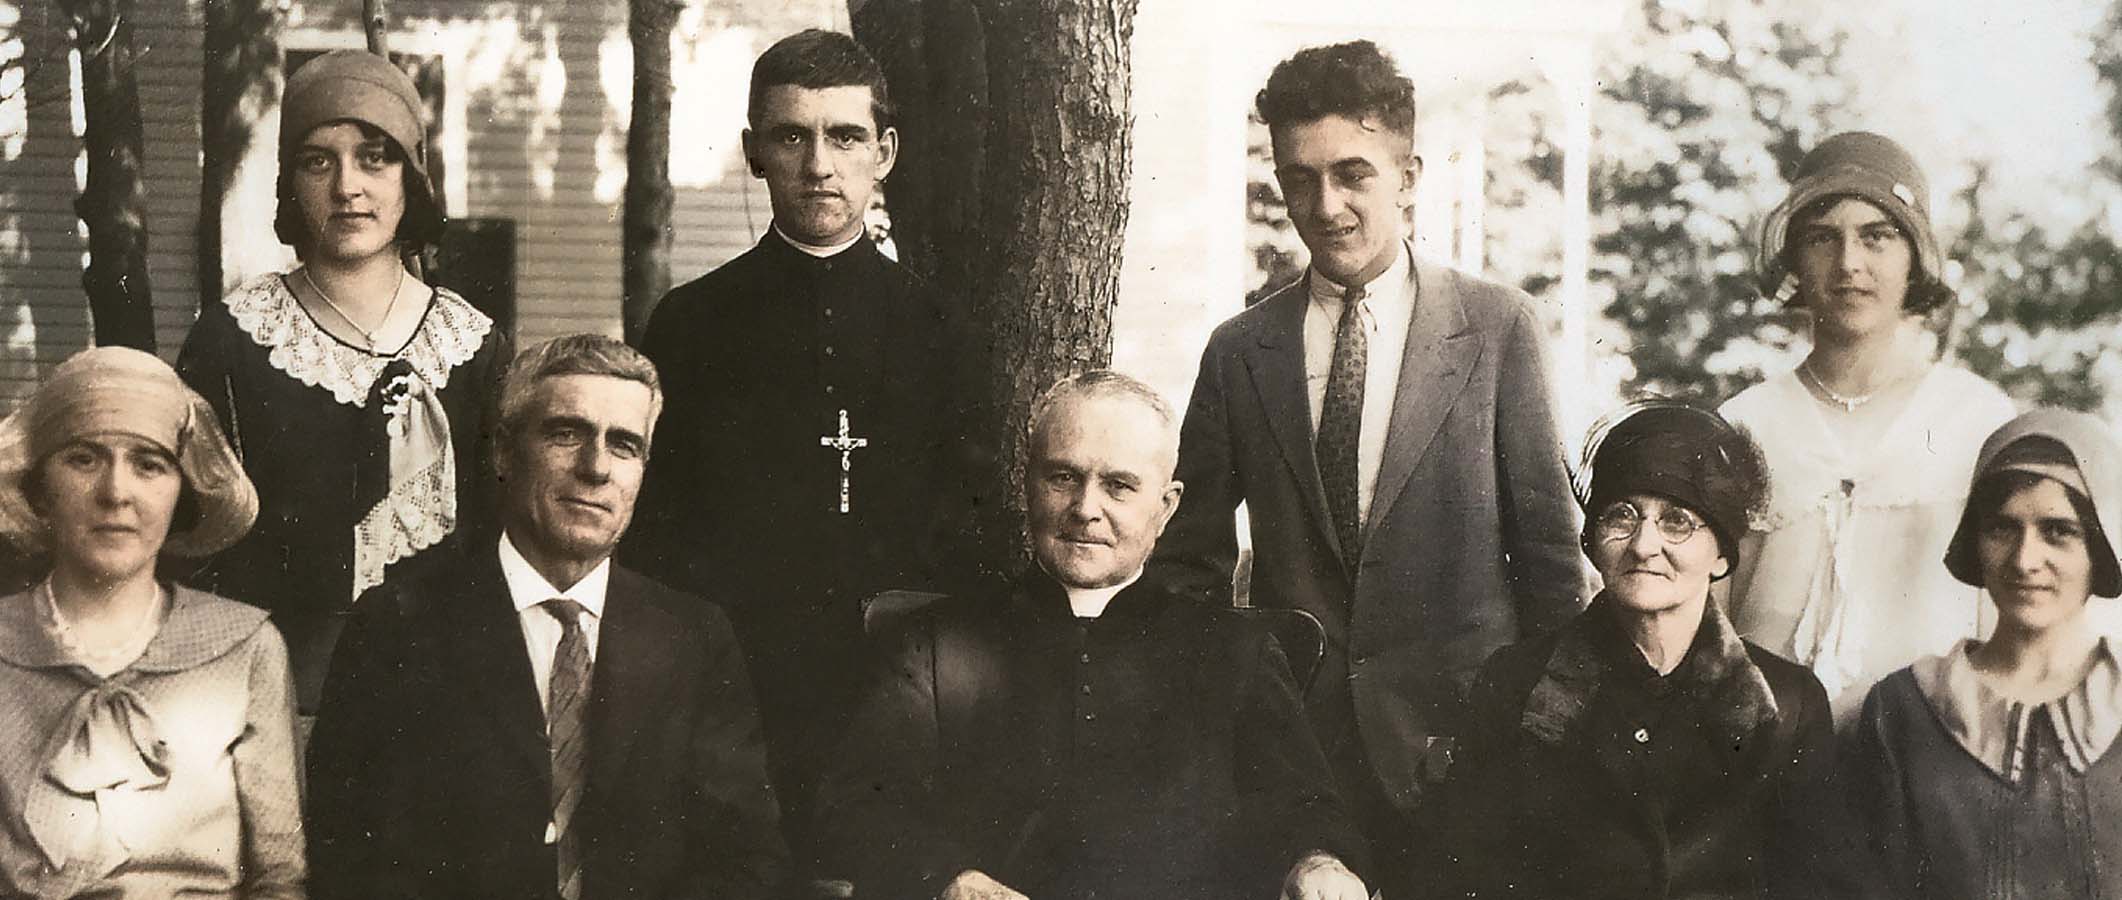 Photographie d'archives : le père Eugène Prévost assis à l'extérieur et entouré des membres de la famille lapointe